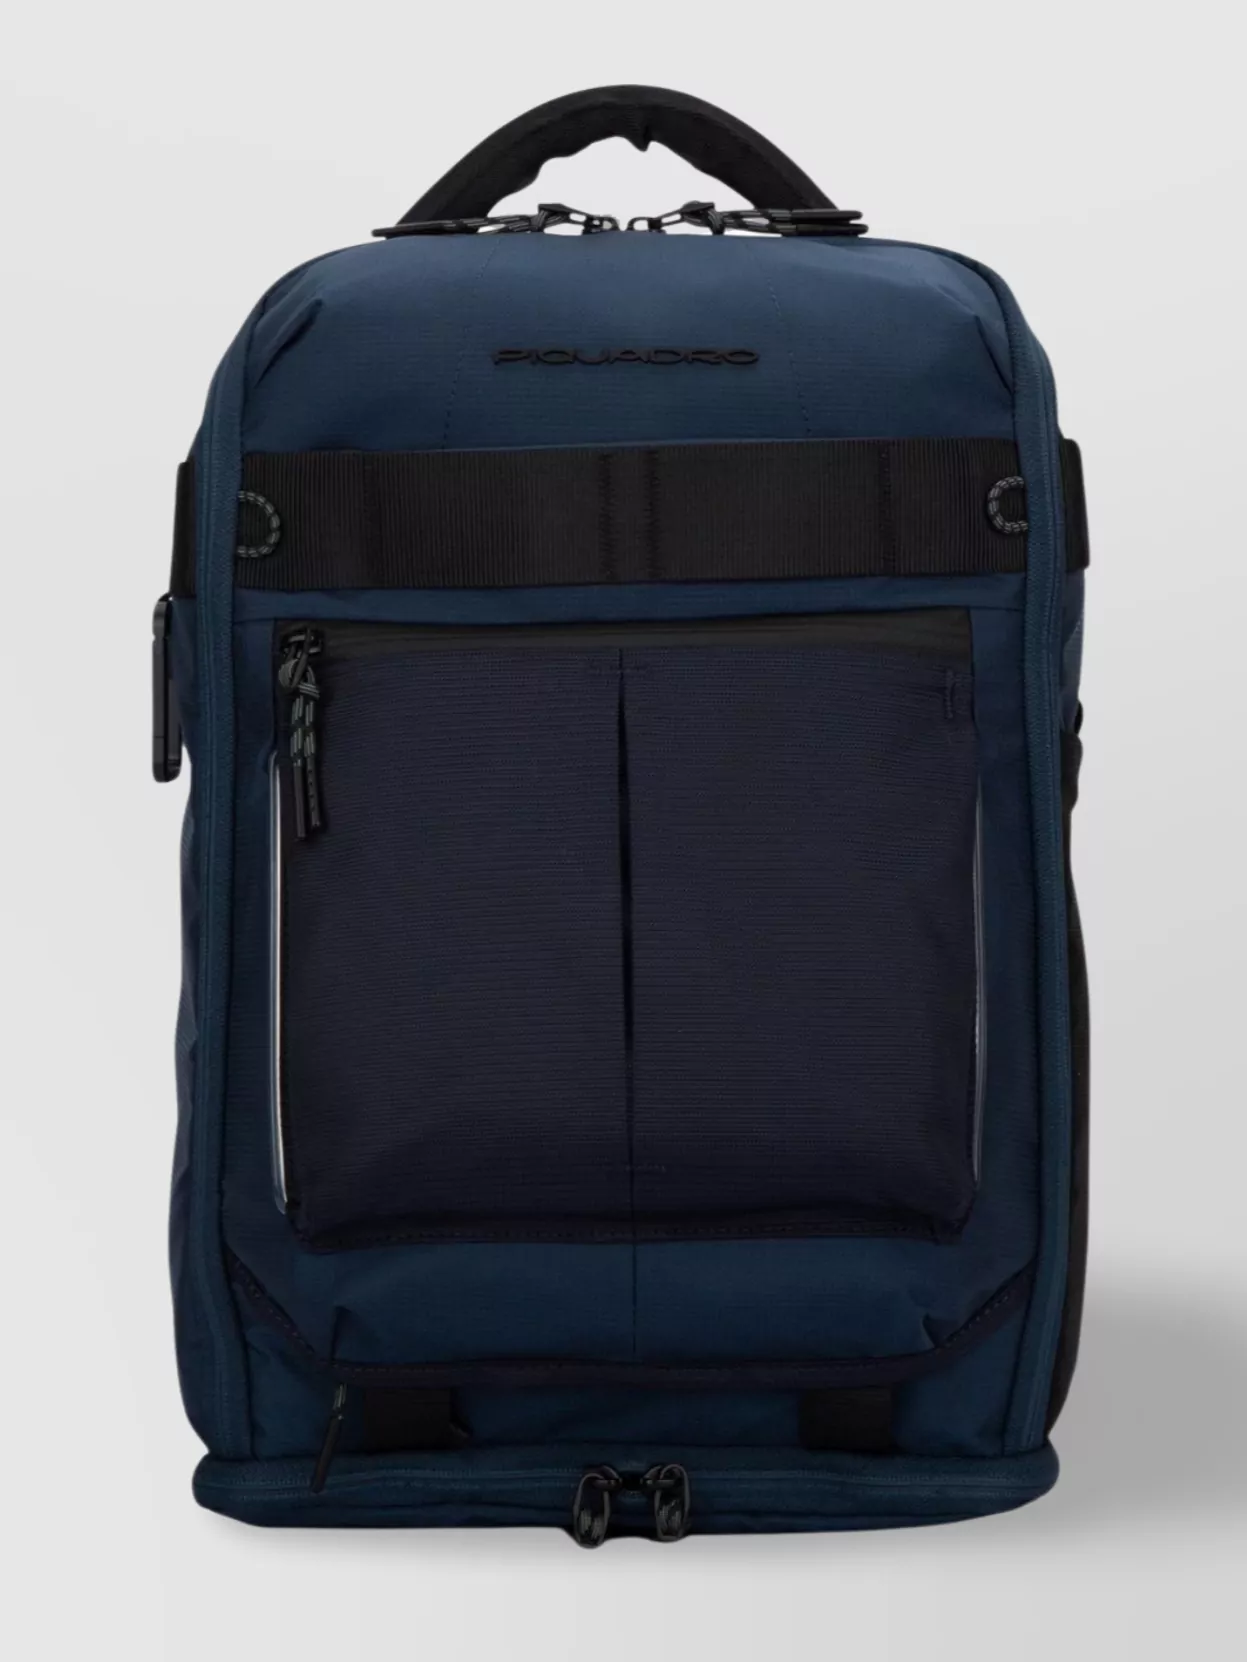 Shop Piquadro Backpack Adjustable Straps Side Pockets